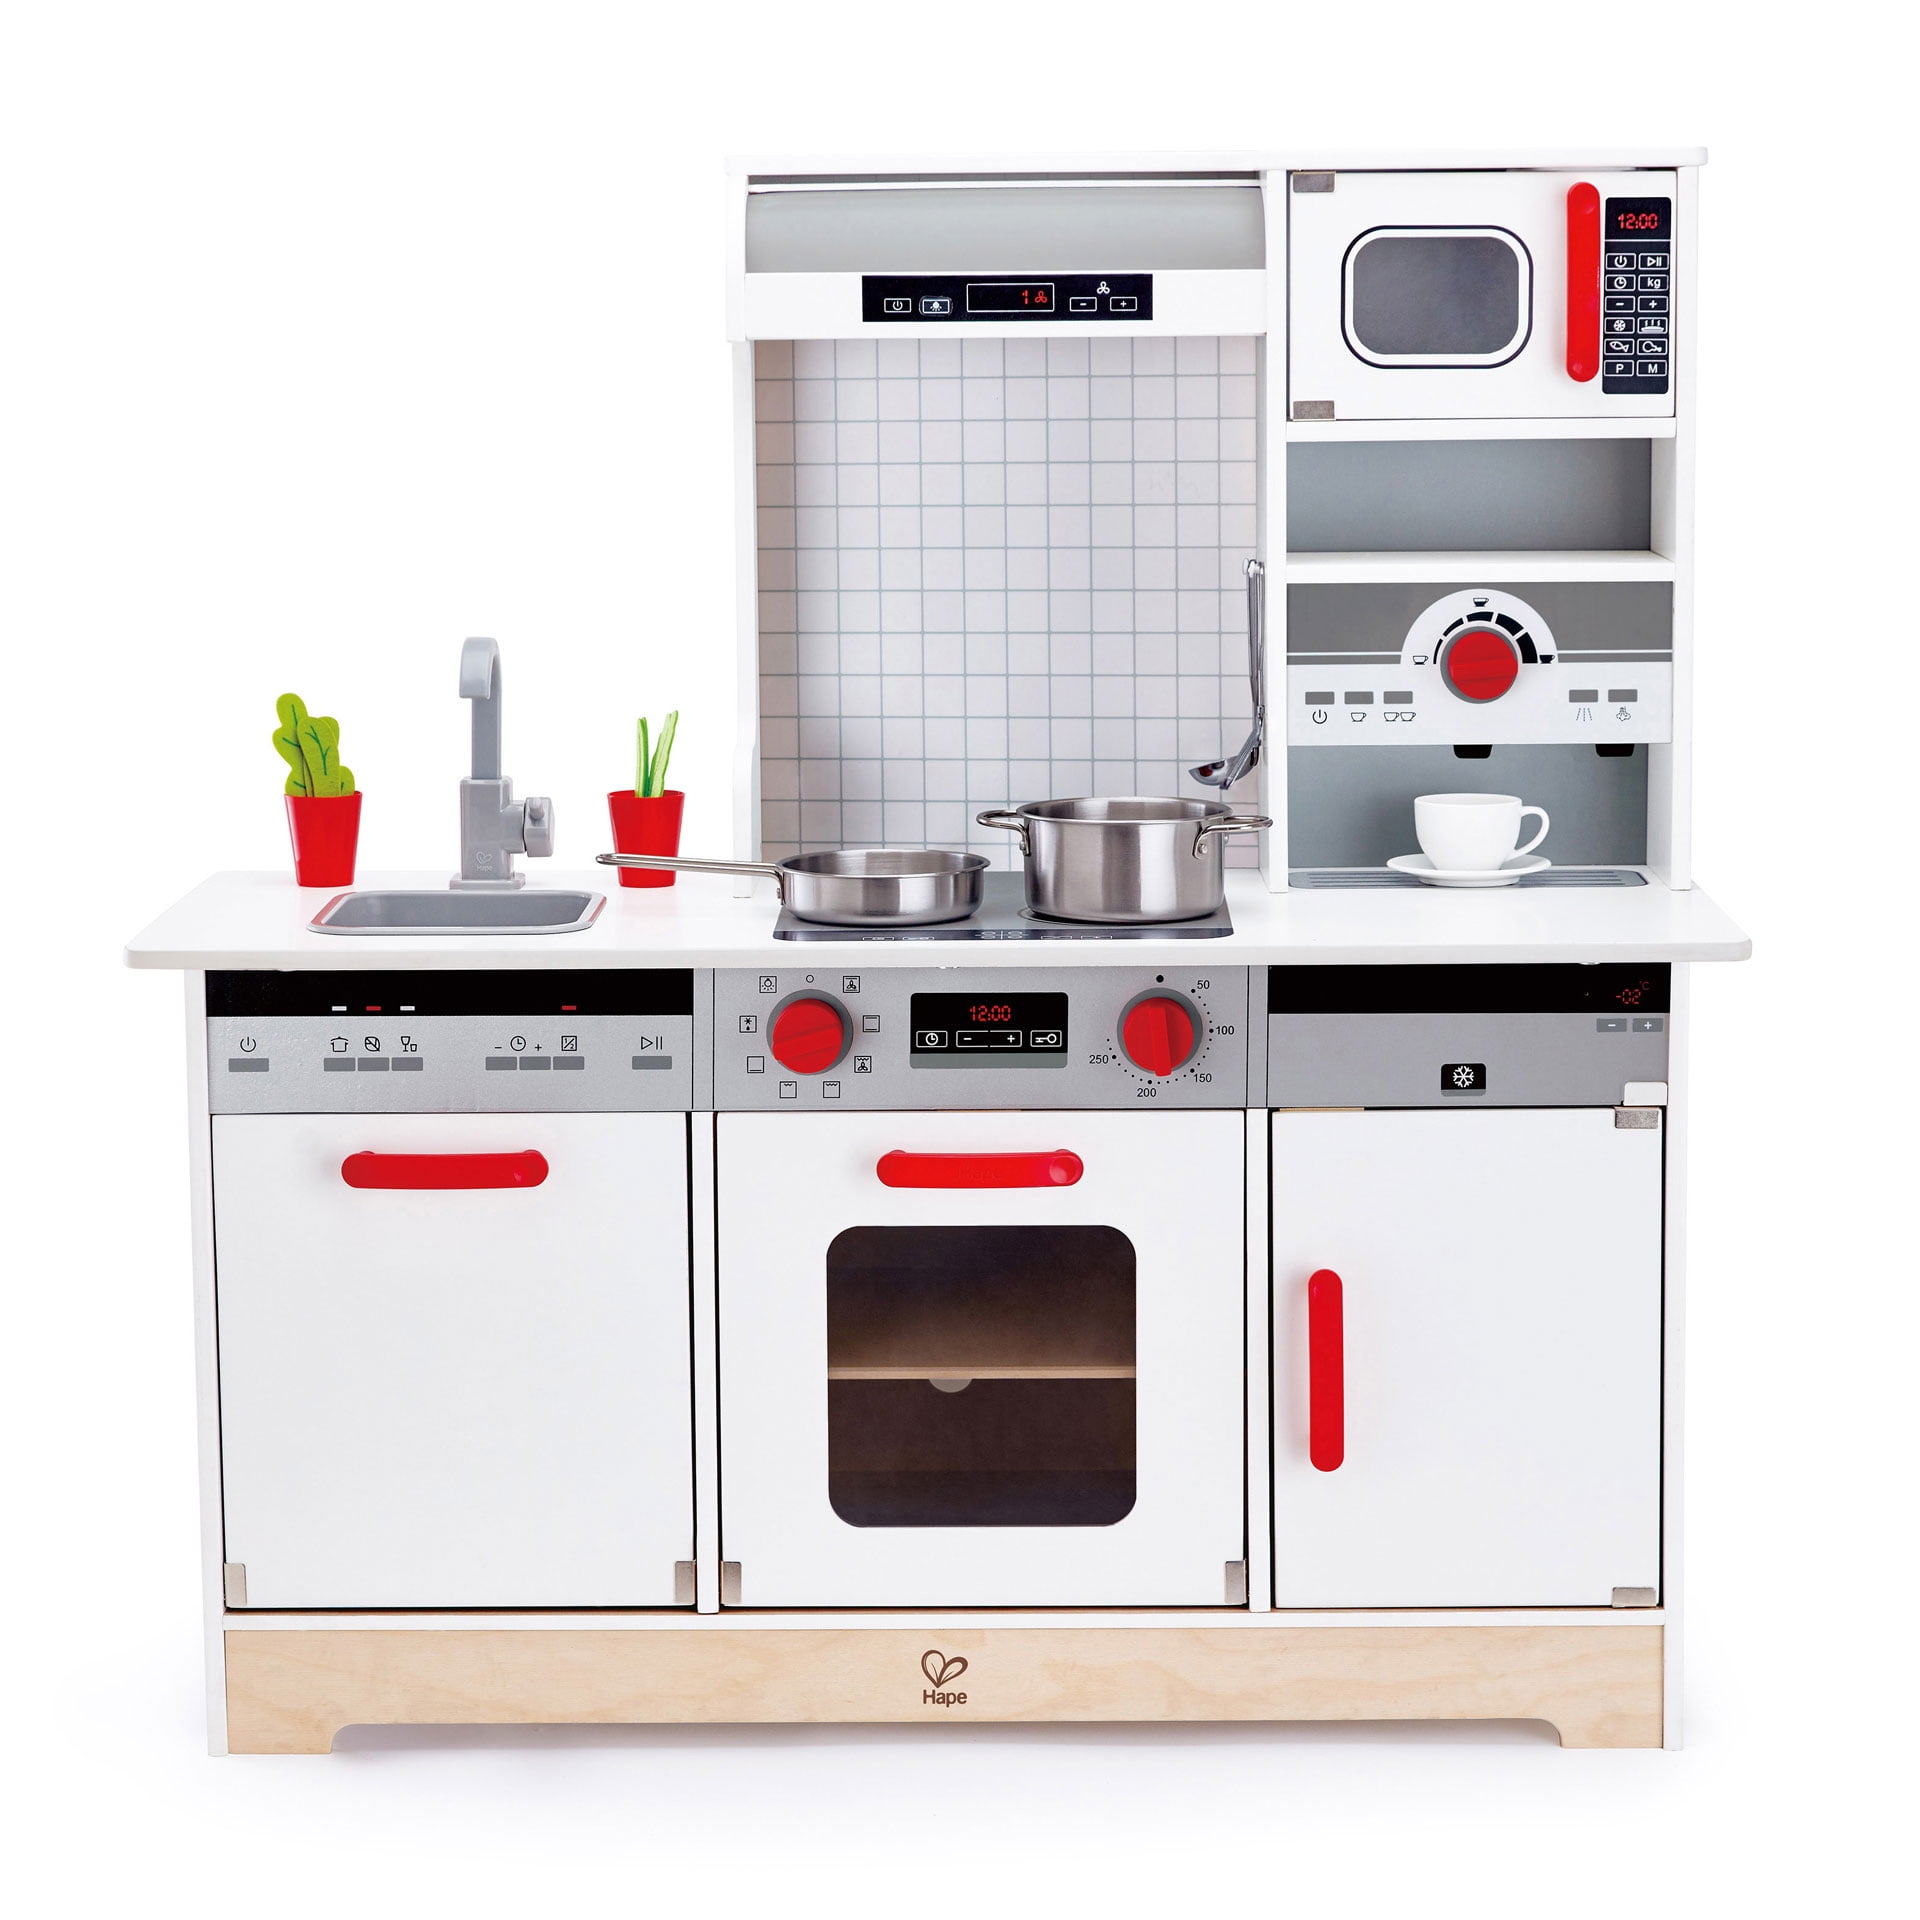 Stovetop Sink Hape Pretend White Gourmet Kitchen Wooden Children's Toy w/ Oven 